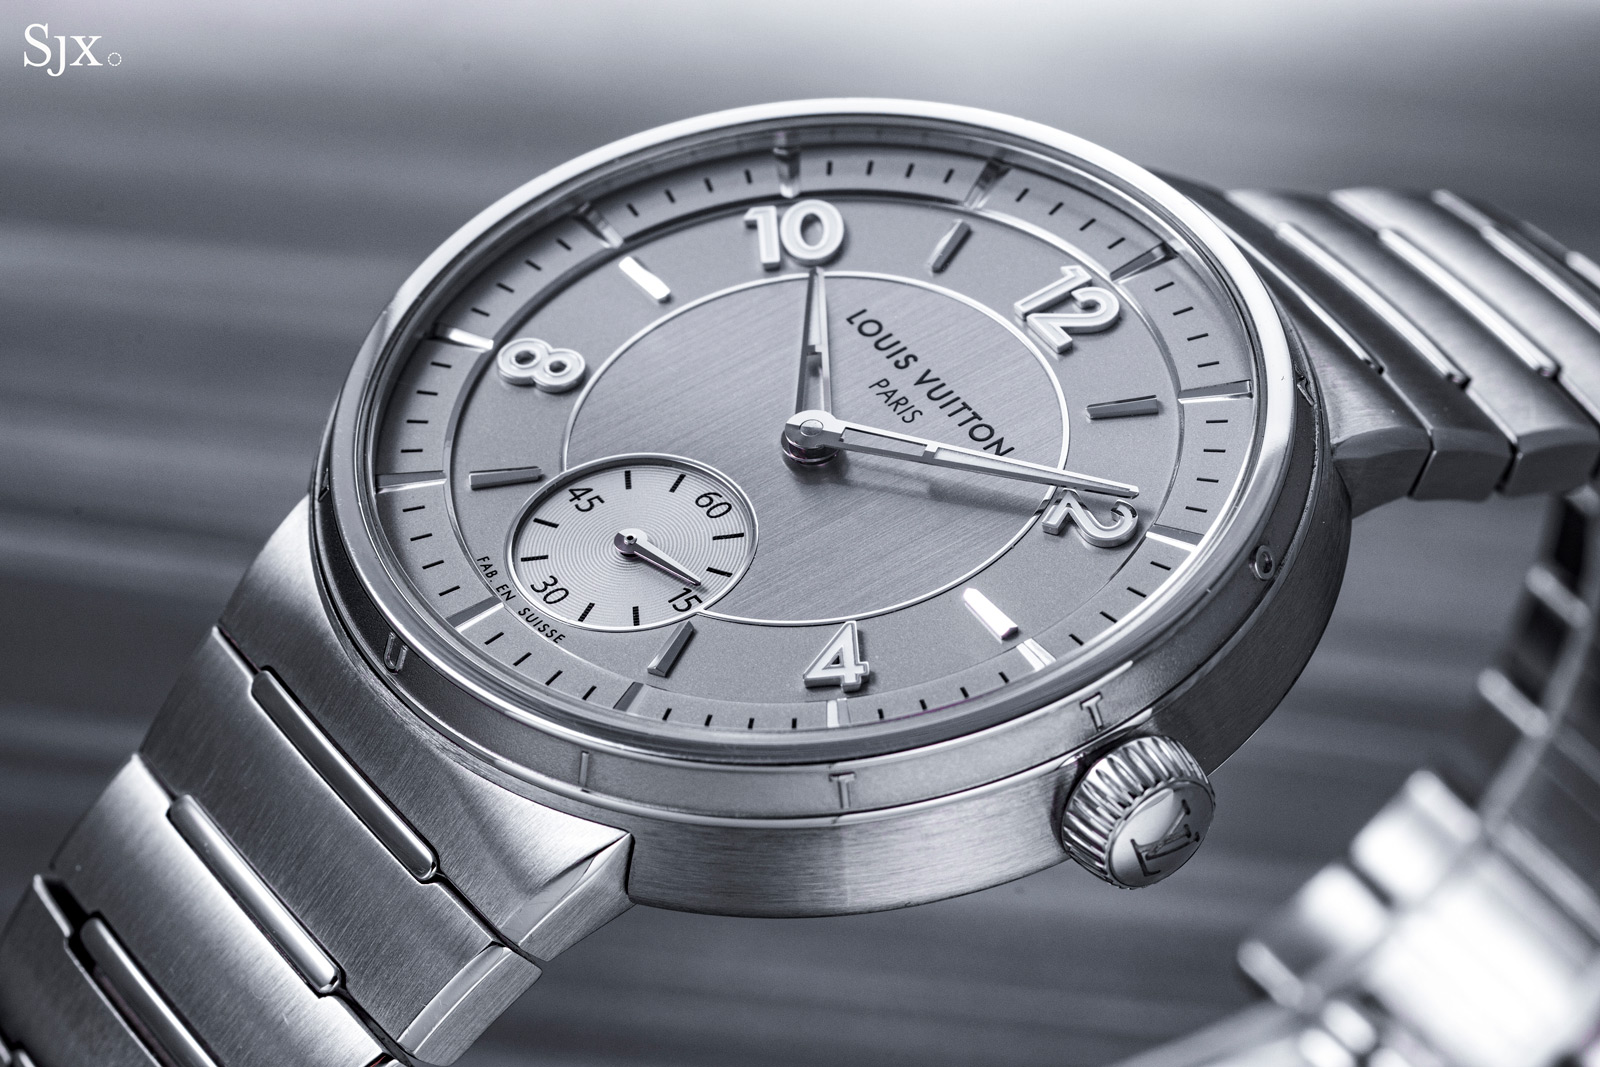 Relógio Louis Vuitton Tambour Rosa Q130 Original - FIQ57